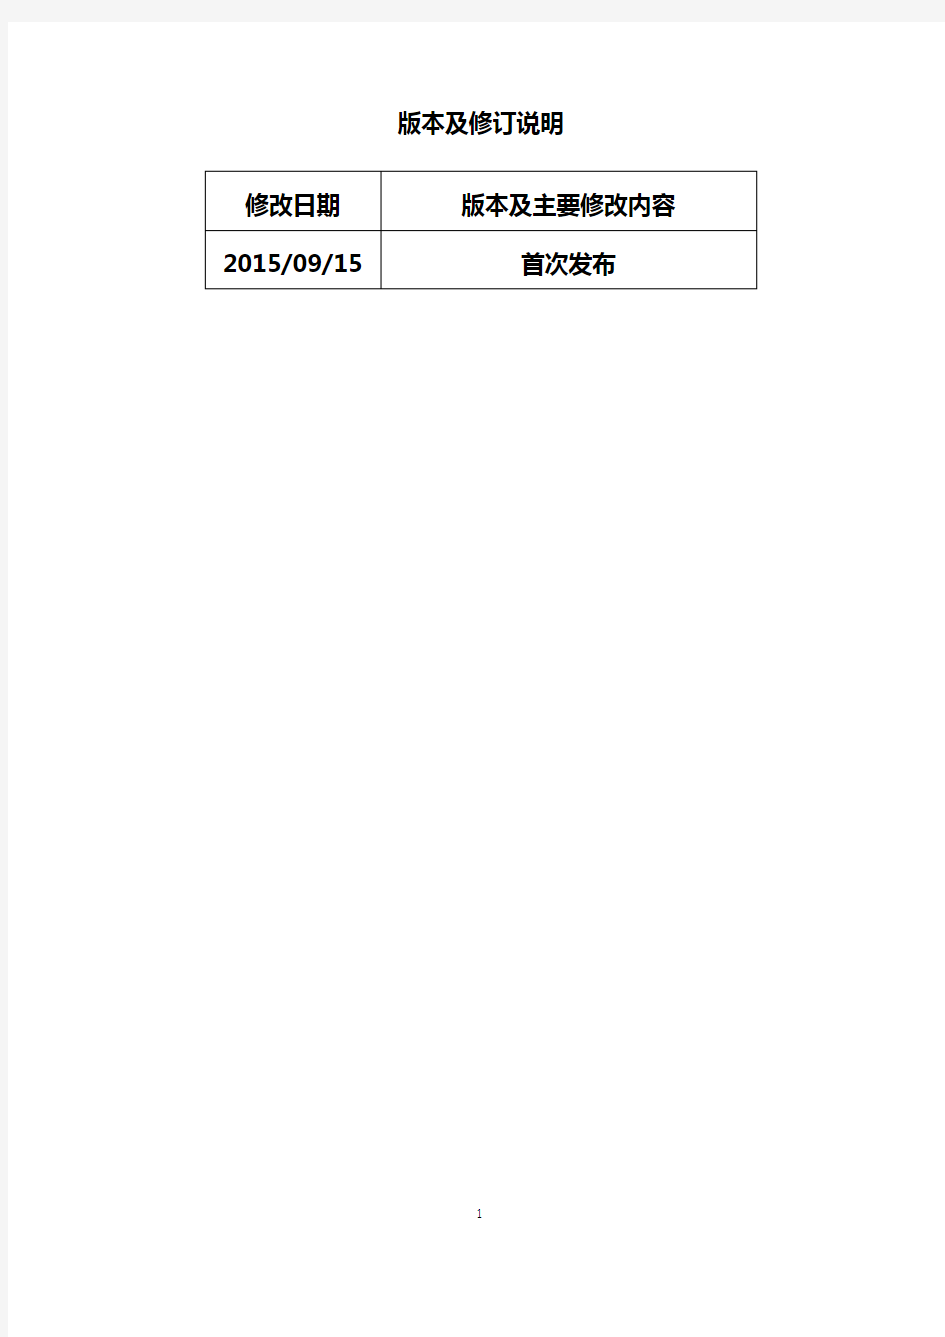 上海证券交易所公司债券预审核指南(三)审核和发行程序及其实施